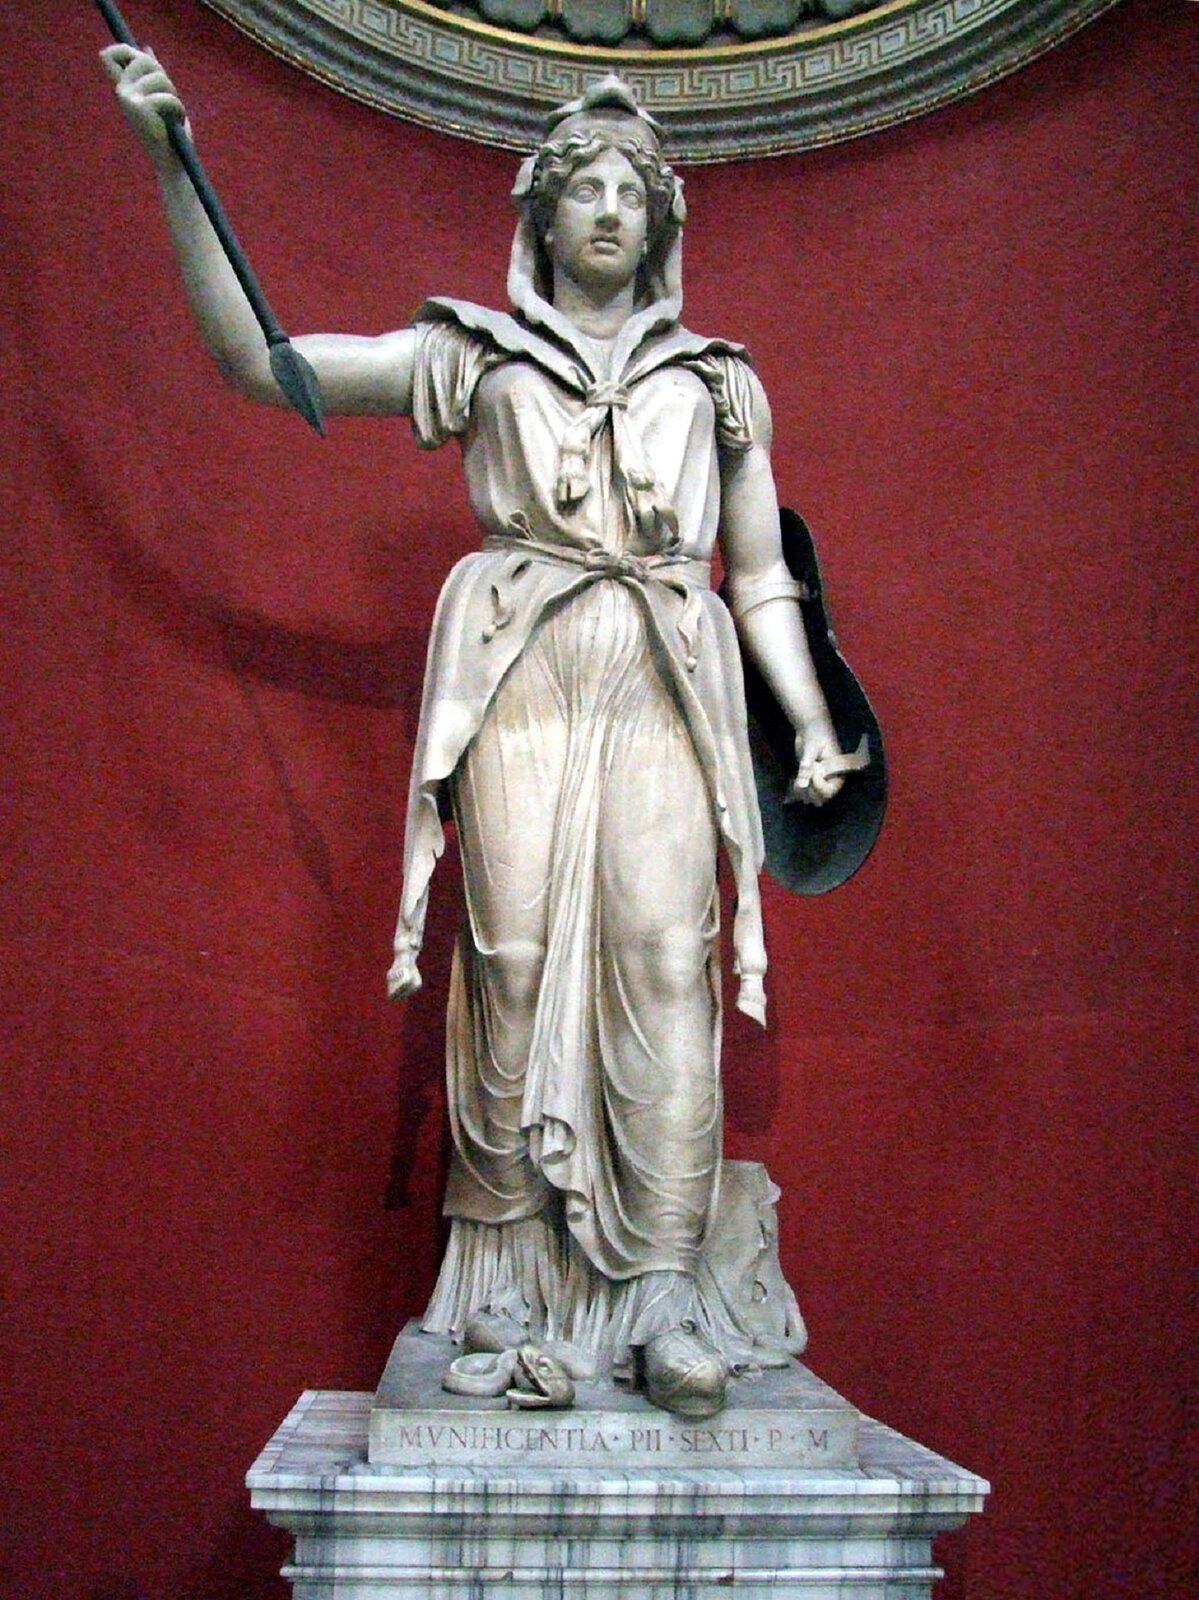 Rzeźba nieznanego autora przedstawia postać Junony -bogini rzymskiej, która została przedstawiona jako szczupła kobieta w średnim wieku, ubrana w welon zakrywający jej włosy, oraz długą szatę zakrywającą jej ciało. Junona jedną rękę ma uniesioną do góry i trzyma w niej włócznię, do drugiej ręki przymocowana została tarcza. Rzeźba została wykonana z jasnego kamienia, stoi na cokole, na którym widoczne są łacińskie inskrypcje. Figura Junony została sfotografowana na tle czerwonej ściany. 